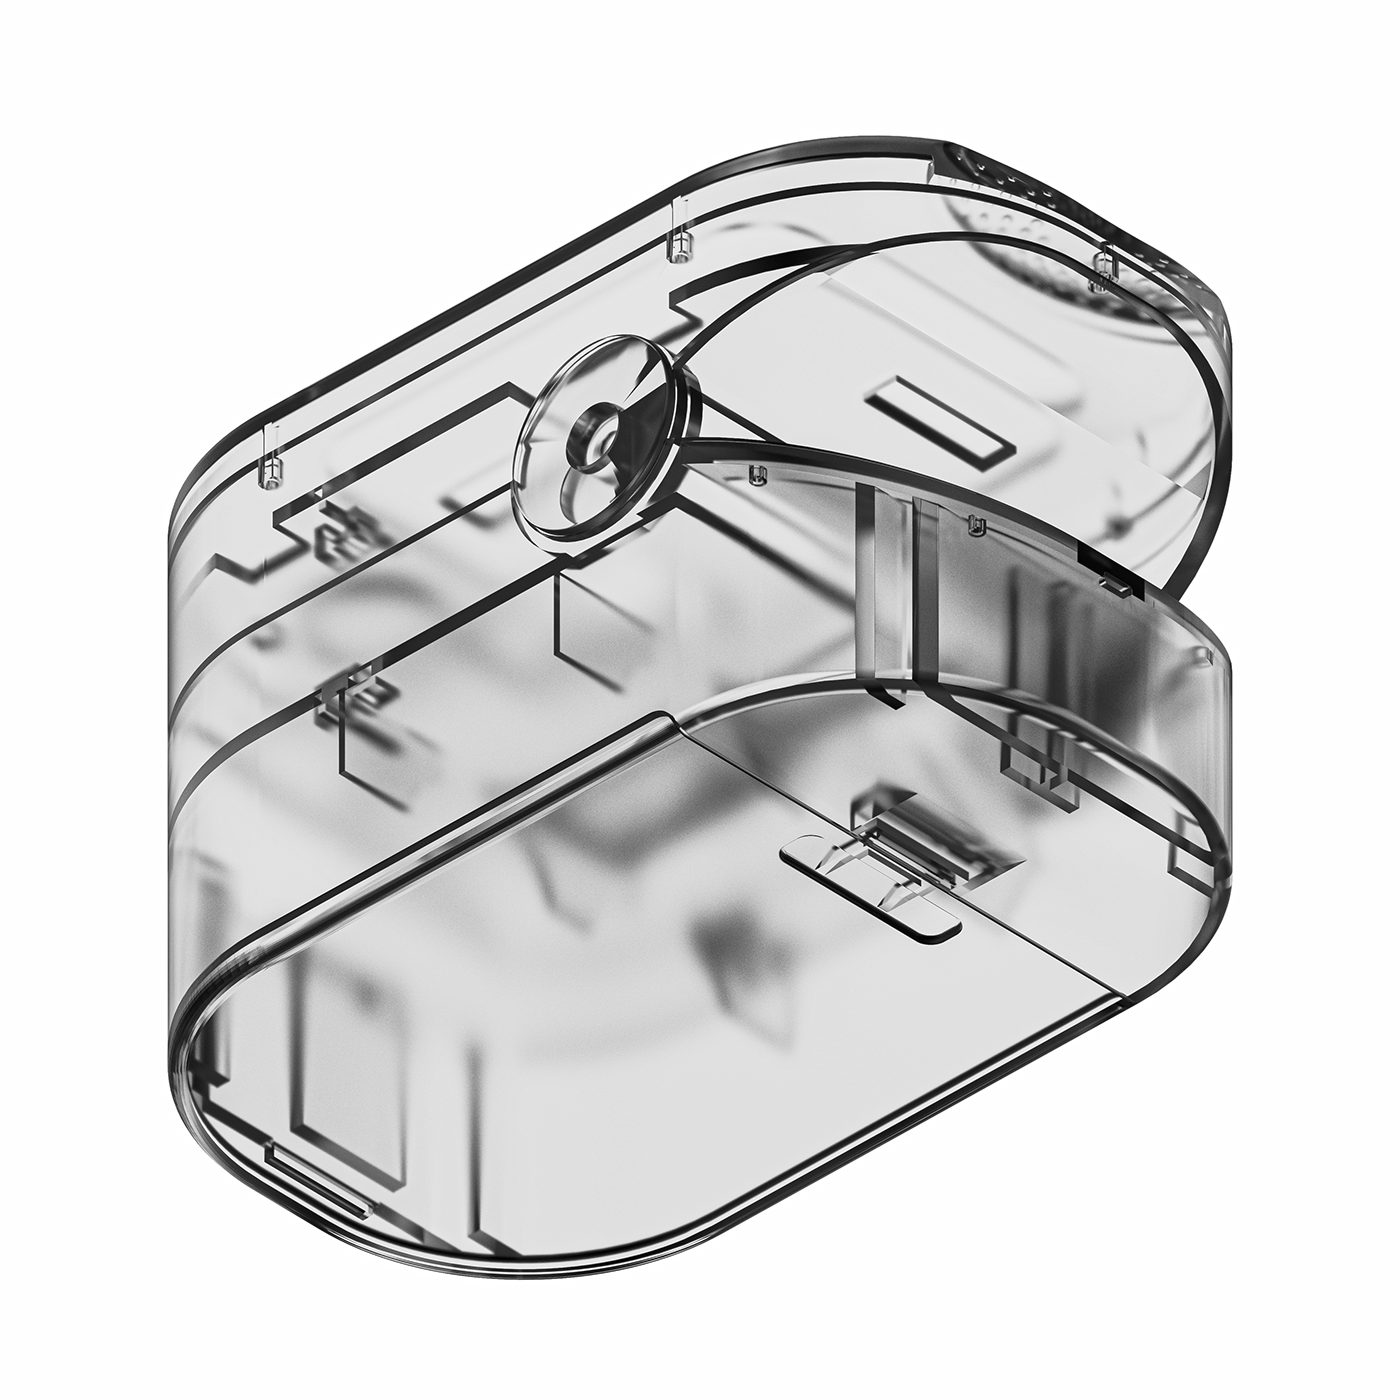 3D product design  industrial design  visualization Render Rhino 3d art medical healthcare keyshot